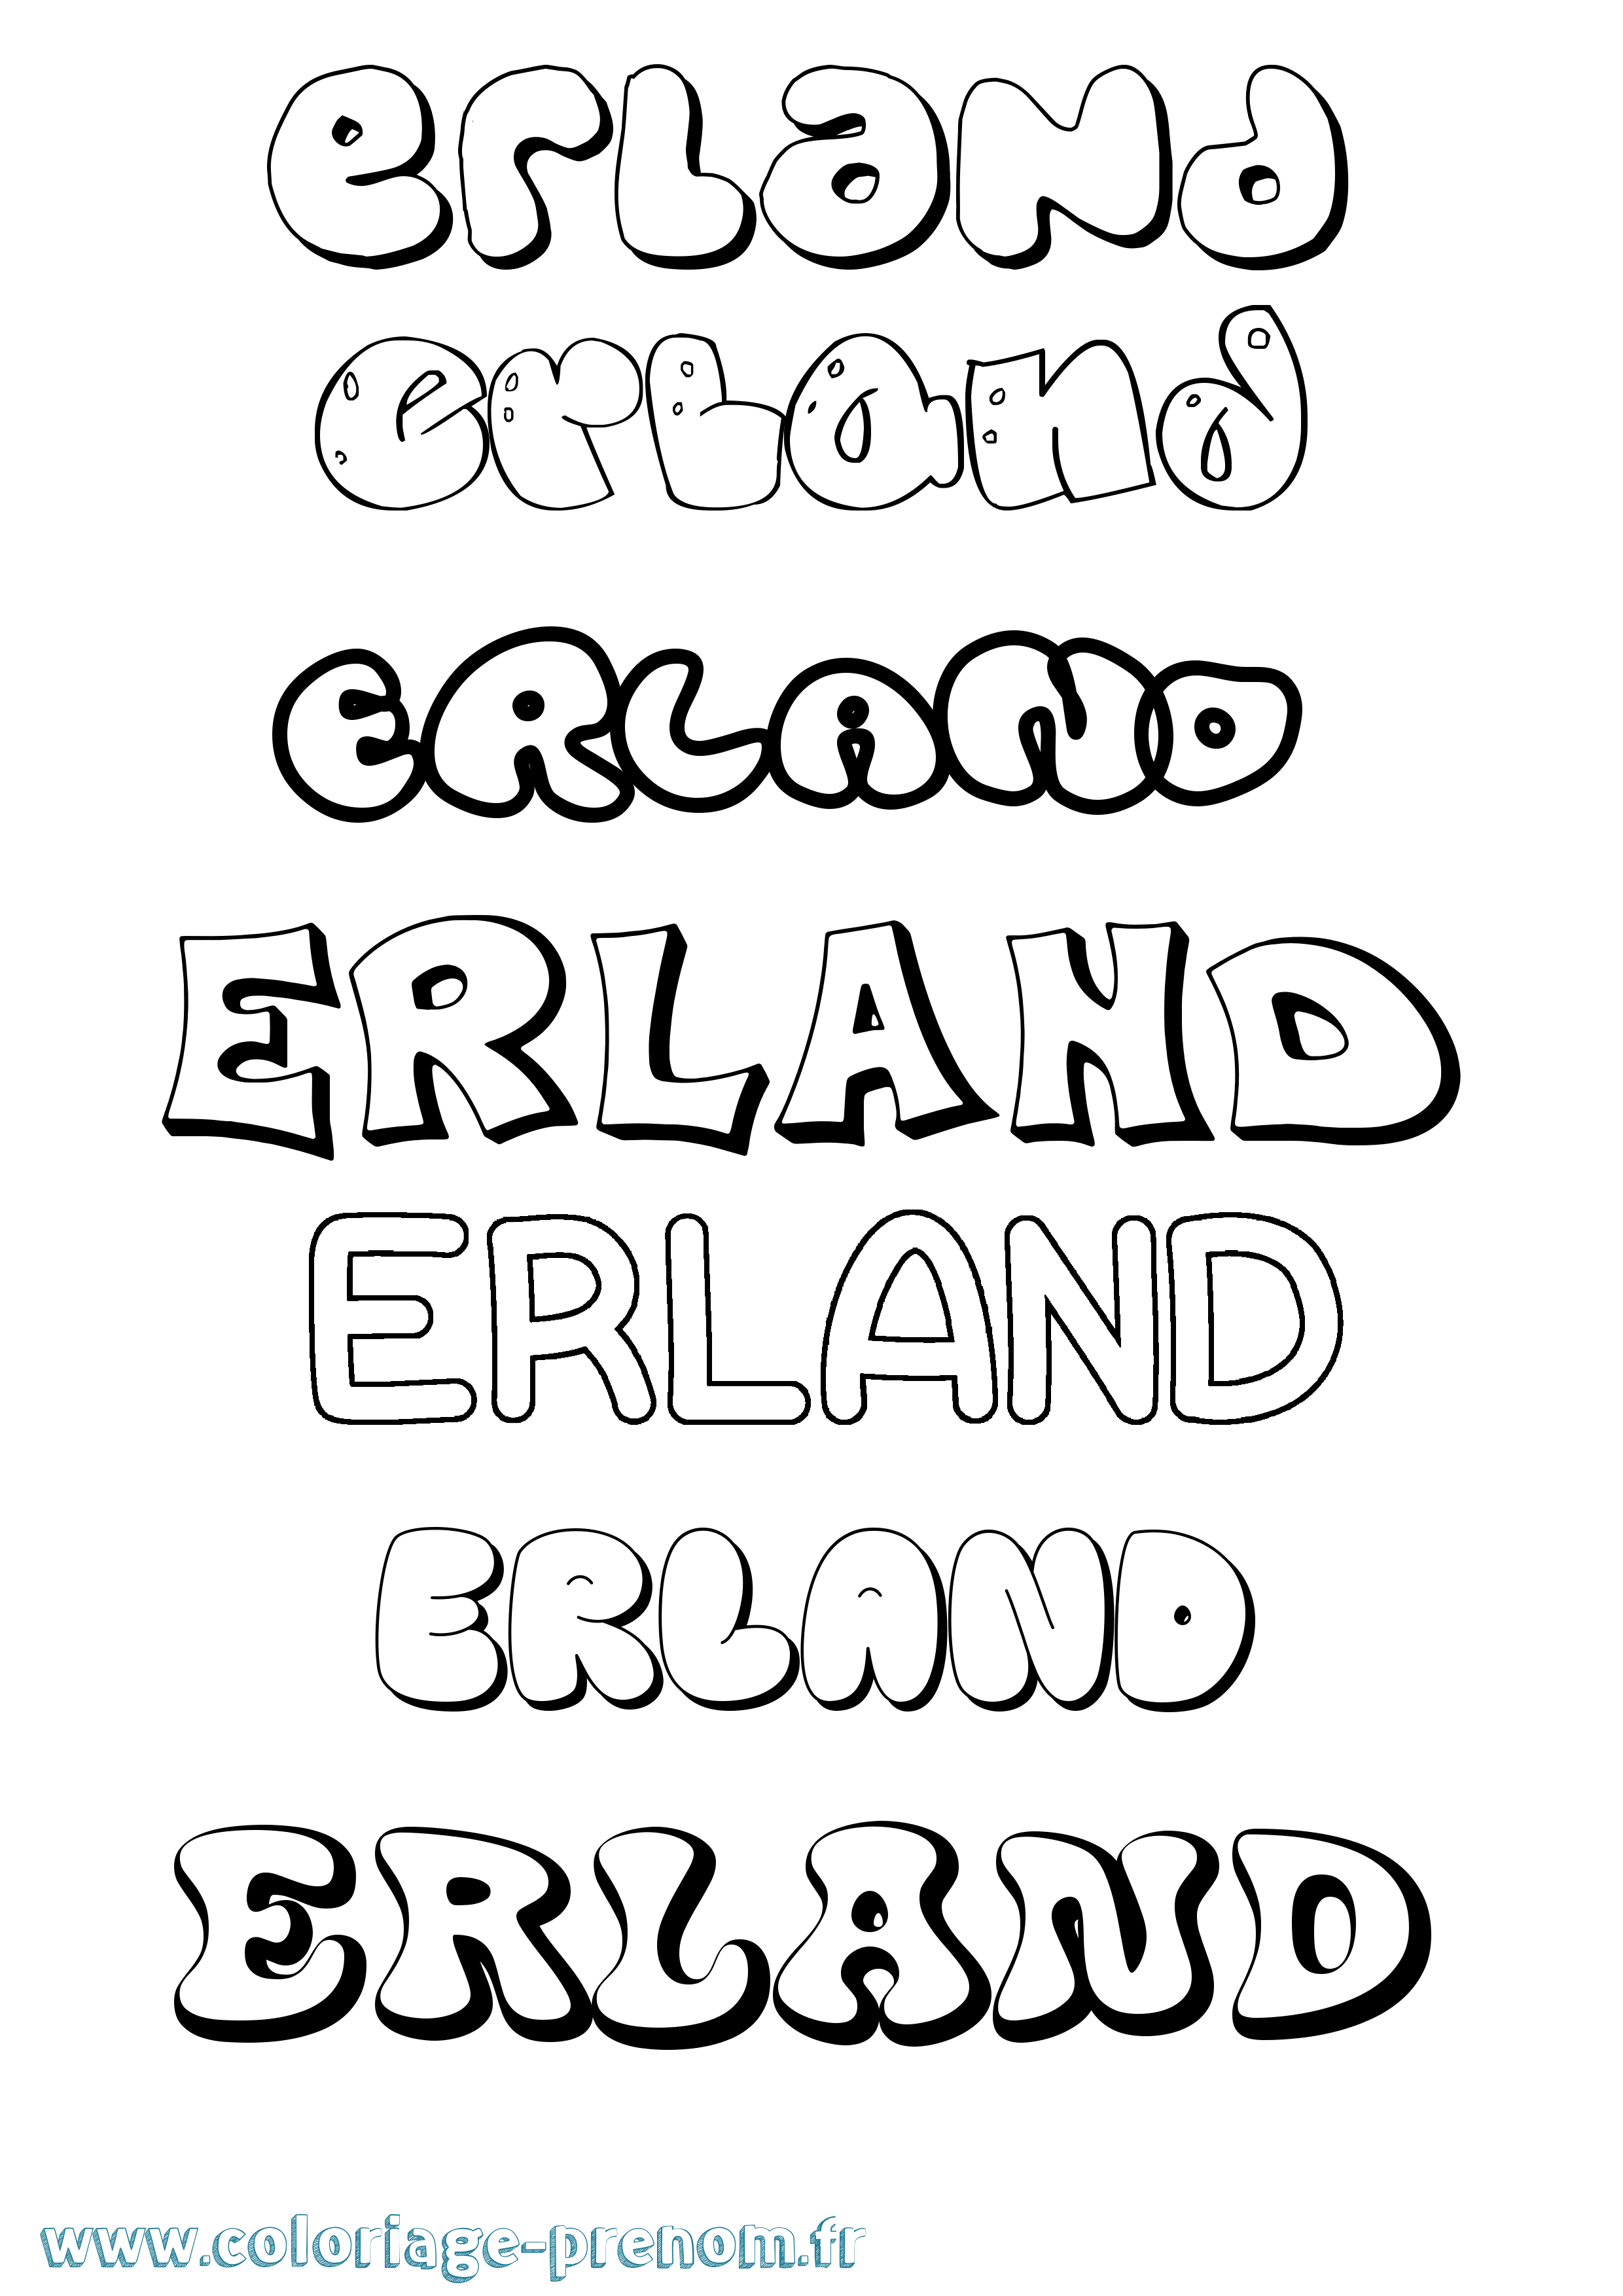 Coloriage prénom Erland Bubble